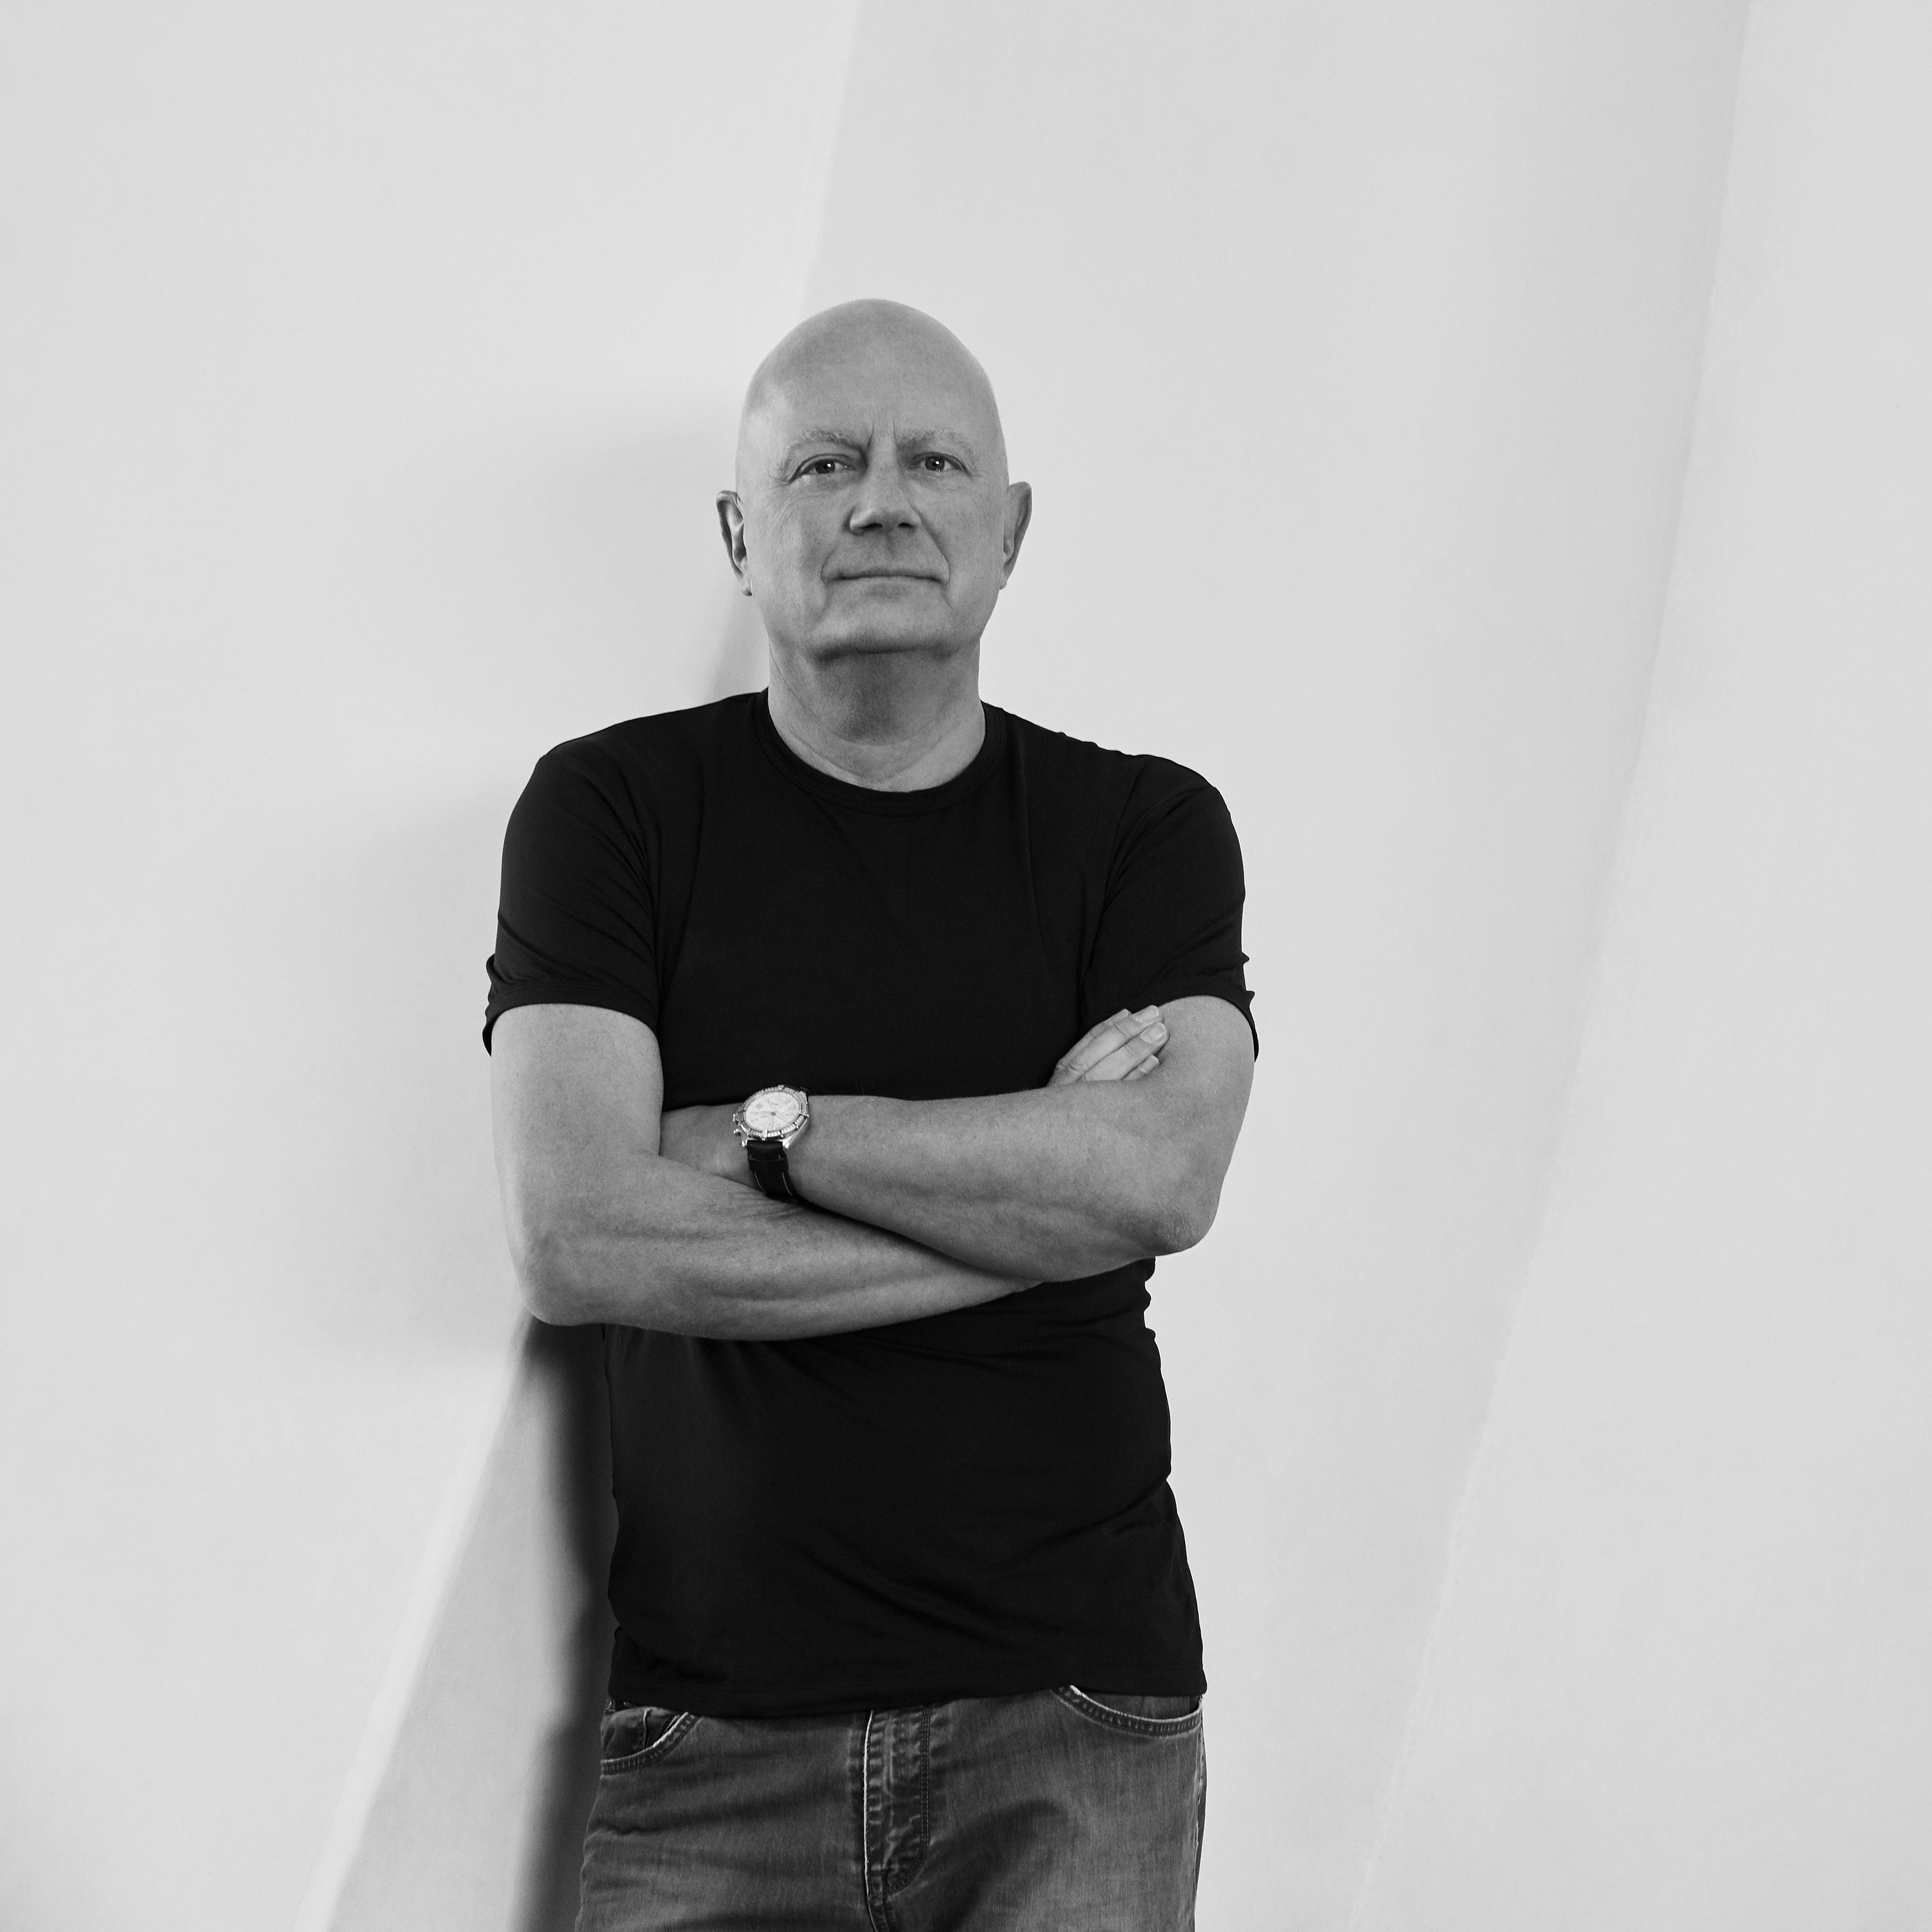 Der Designer Morten Georgsen in Schwarz-Weiß